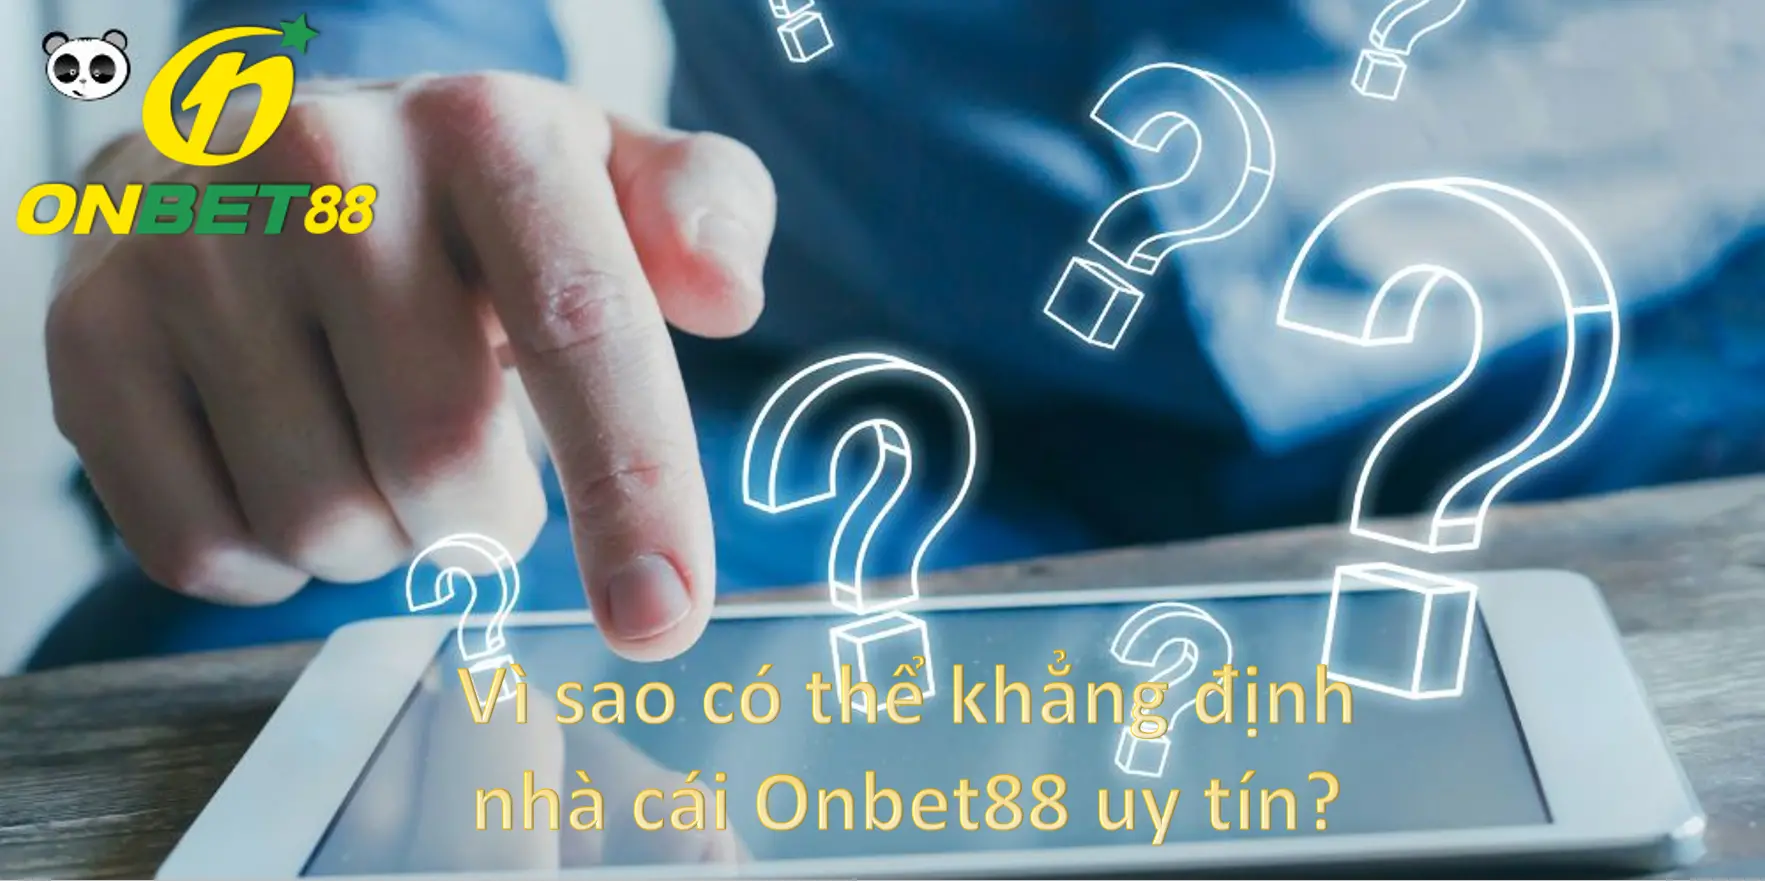 Vì sao có thể khẳng định nhà cái Onbet88 uy tín?